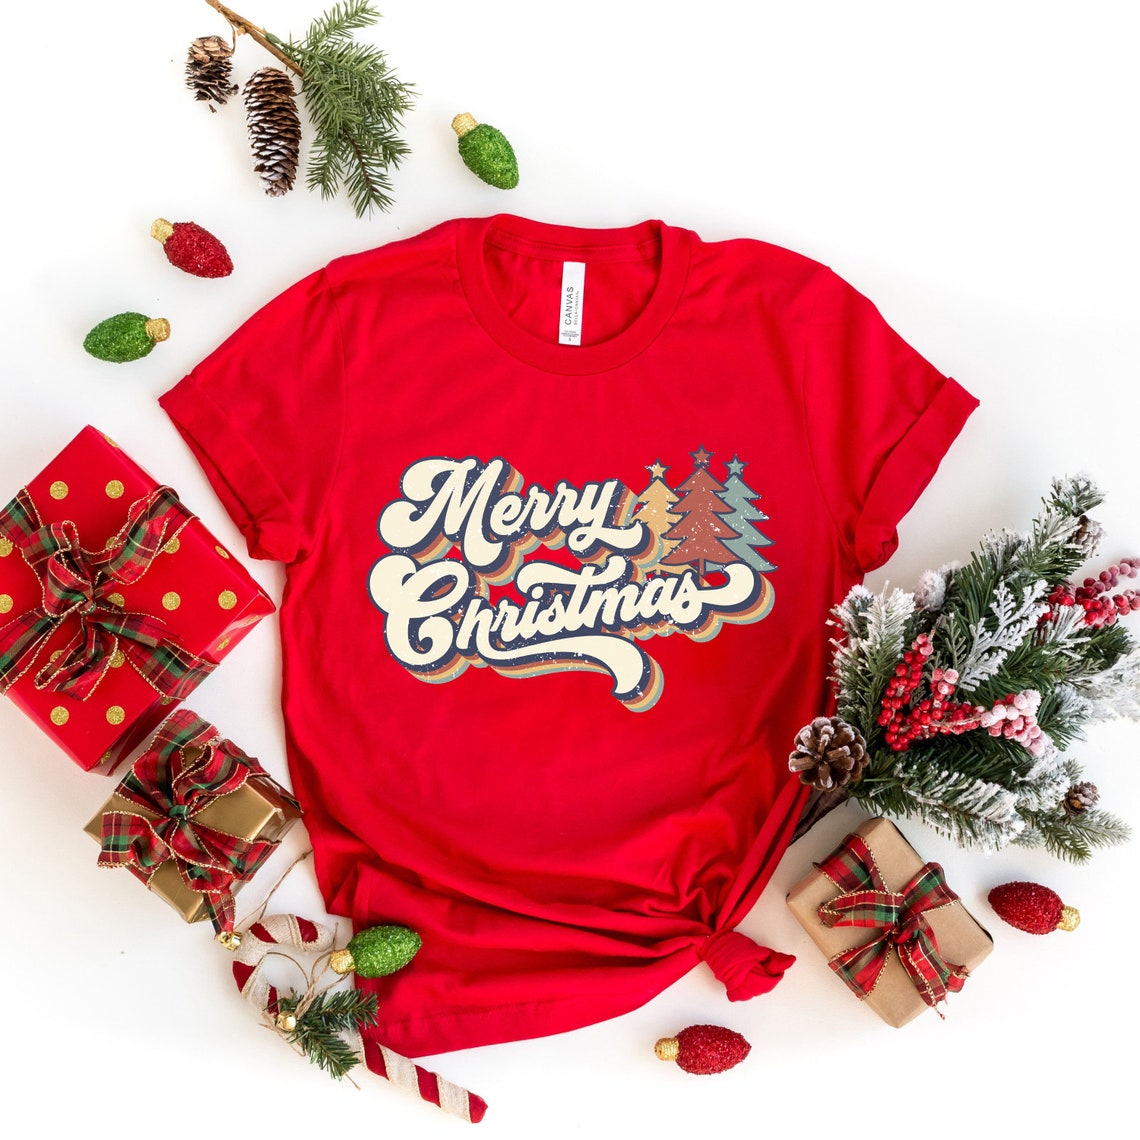 Vintage Merry Christmas Shirt,Merry Christmas Shirt,Christmas T shirt, Christmas Family Shirt,Christmas Gift,70s Style Merry Christmas Shirt